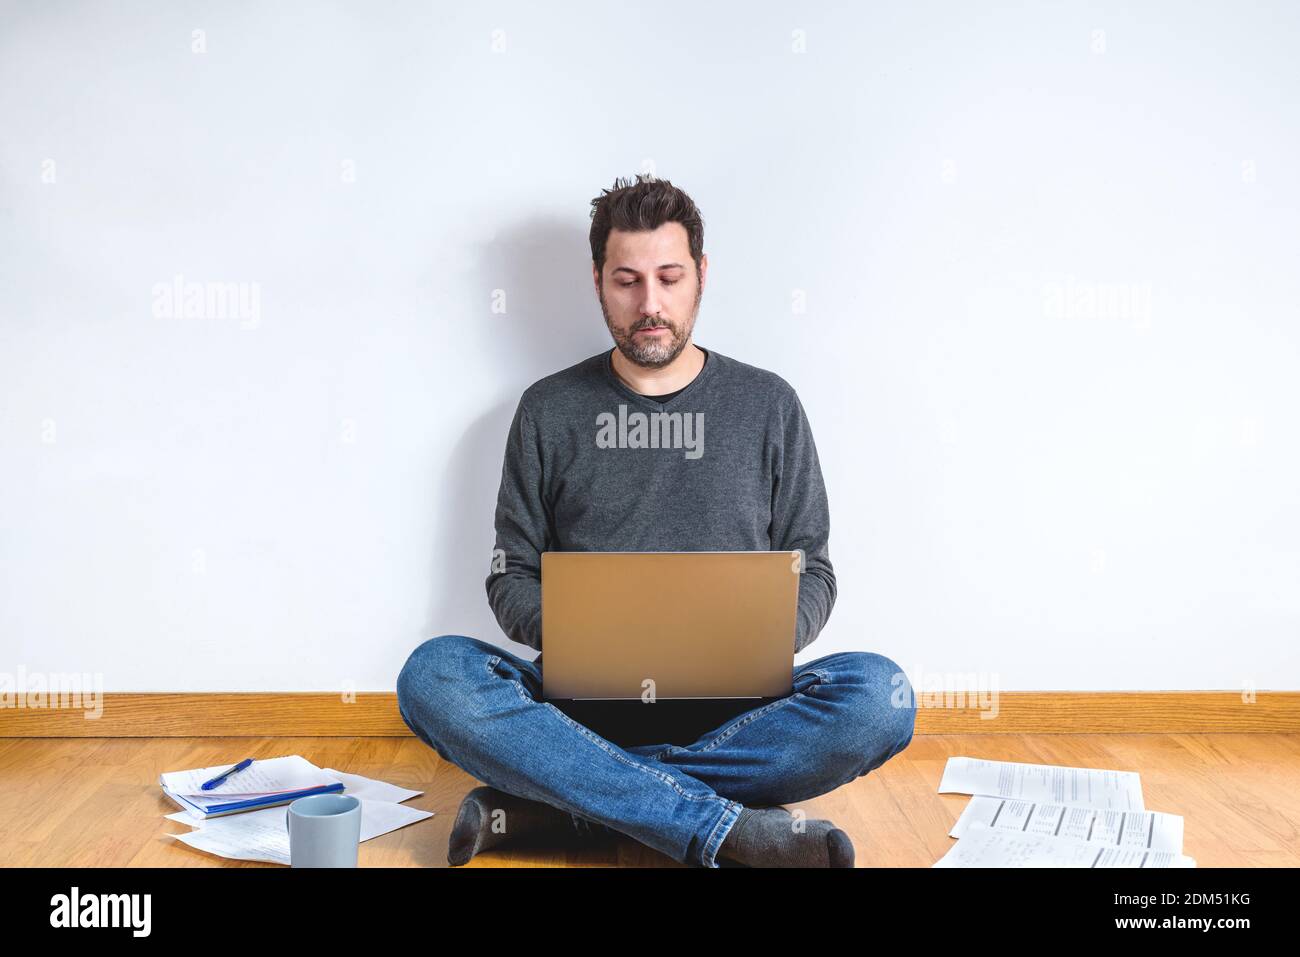 uomo caucasico sui suoi 40s seduto casual seduta sul pavimento in legno di un appartamento con un computer portatile e circondato di carte Foto Stock